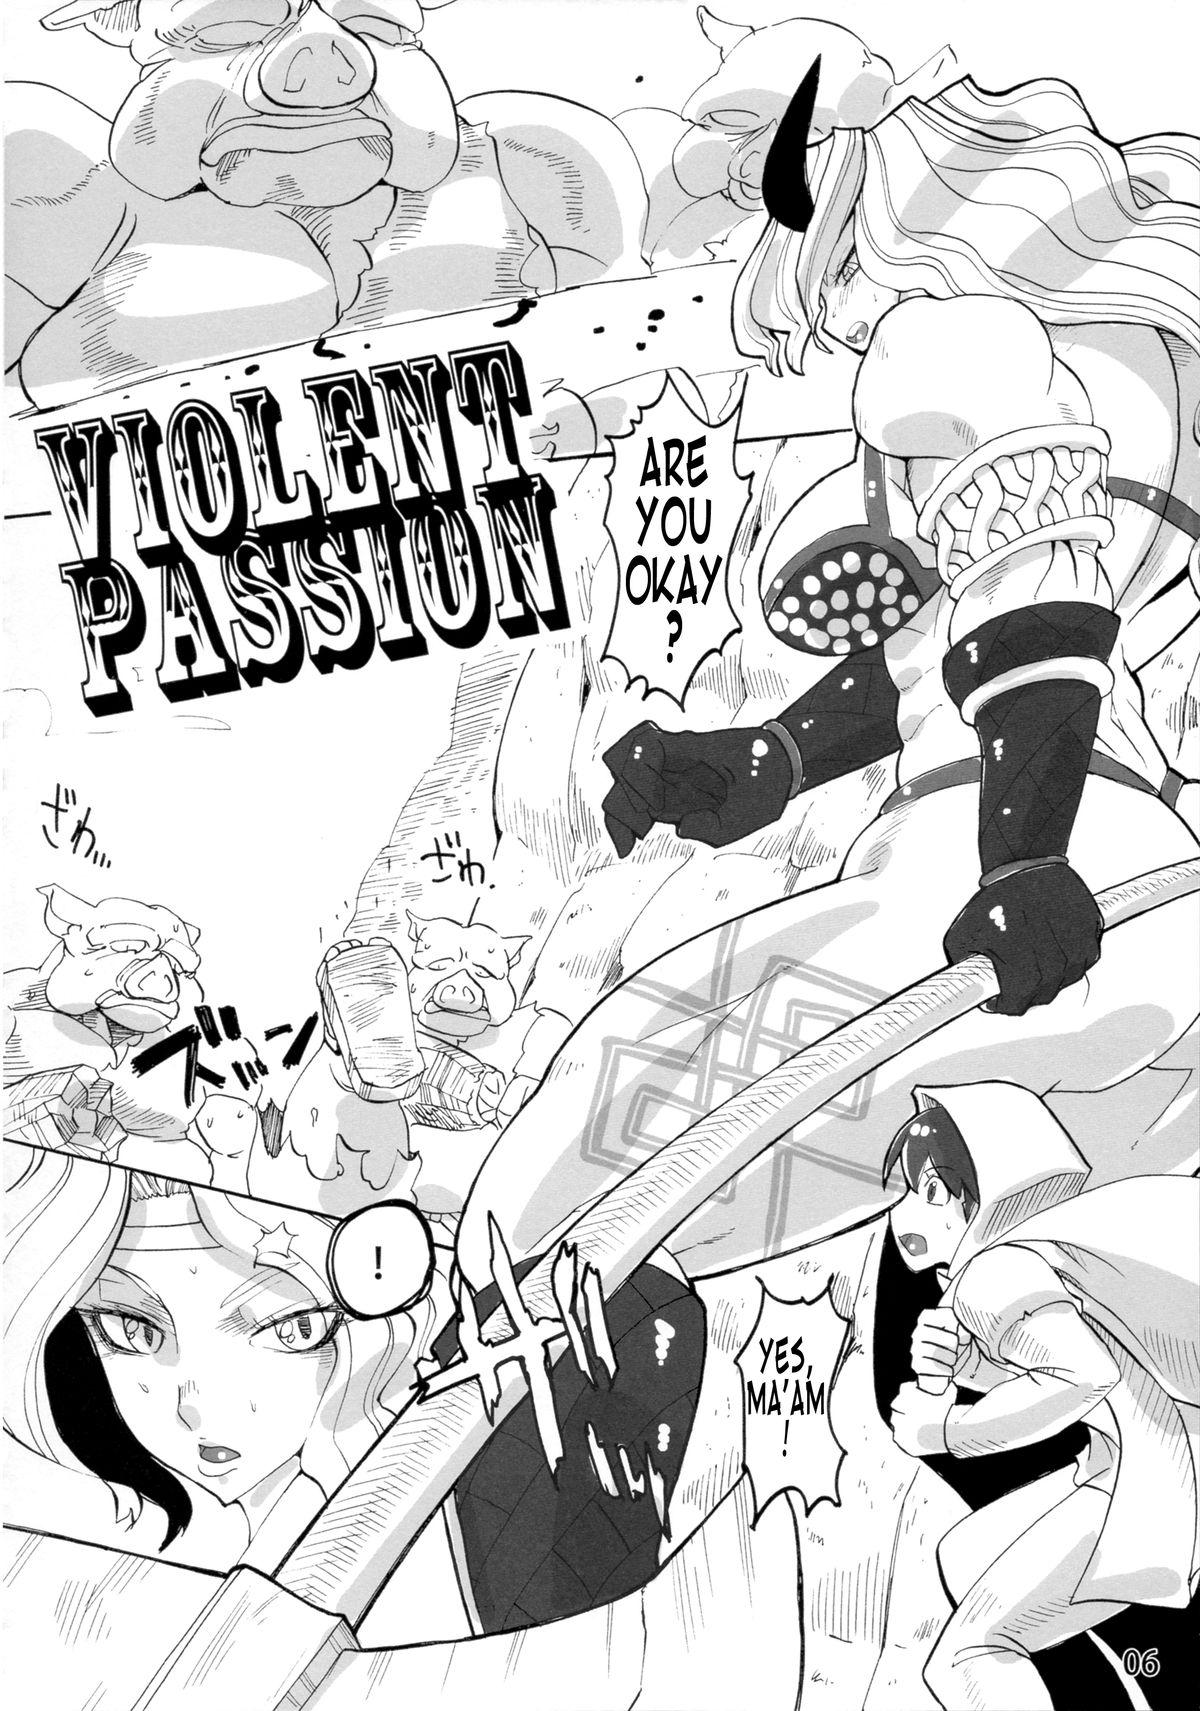 Violent Passion 4